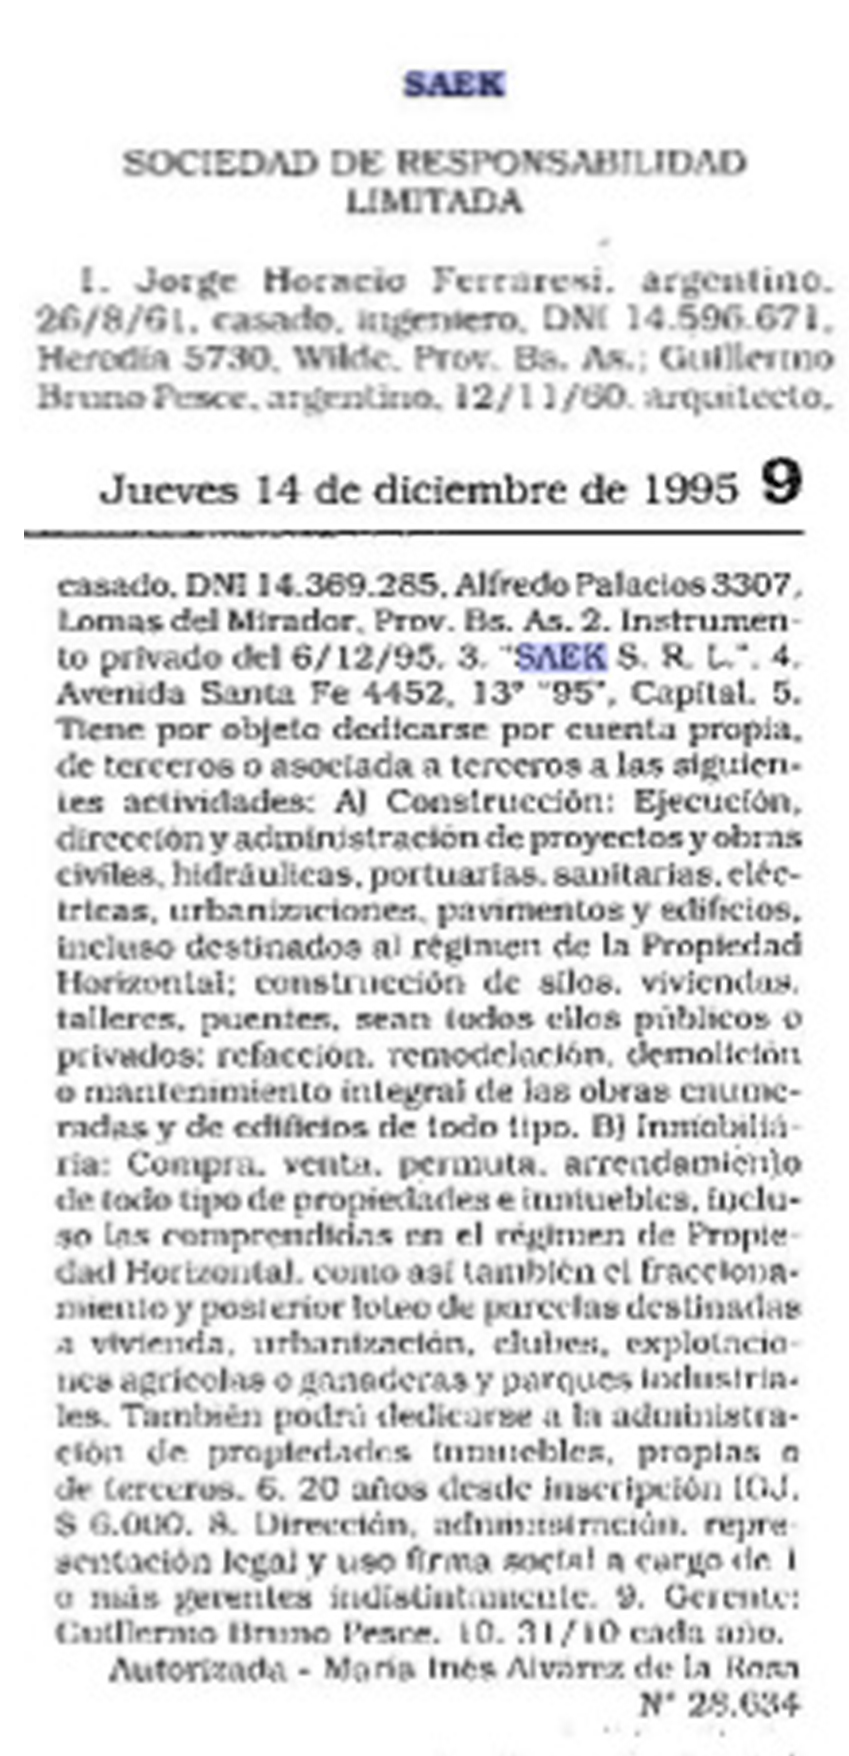 El Boletín Oficial de diciembre de 1995 en que apareció publicada la constitución de SAEK SRL, y aparece Ferraresi como socio fundador.